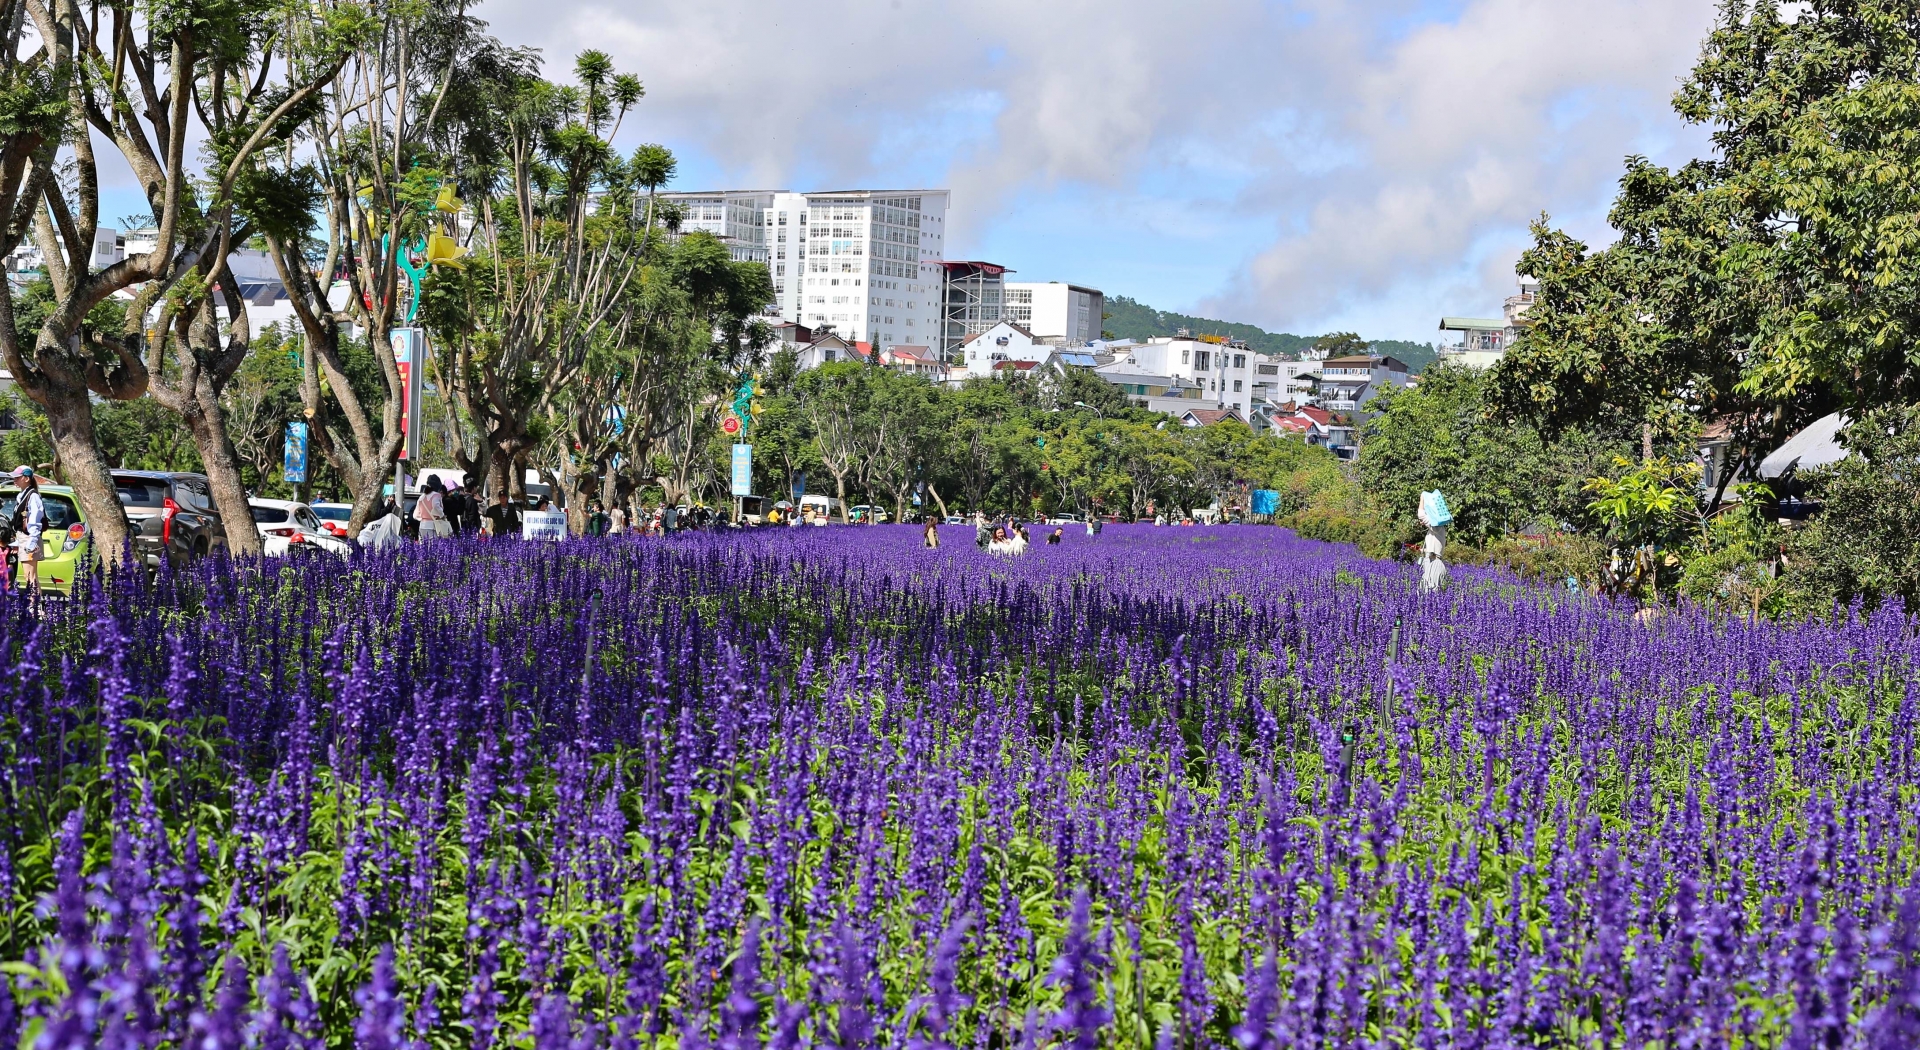 Vườn hoa Lavender tím nổi bật, thu hút hàng trăm lượt người dân, du khách tới ngắm, chụp ảnh giữa buổi sáng chủ nhật trời nắng đẹp.
